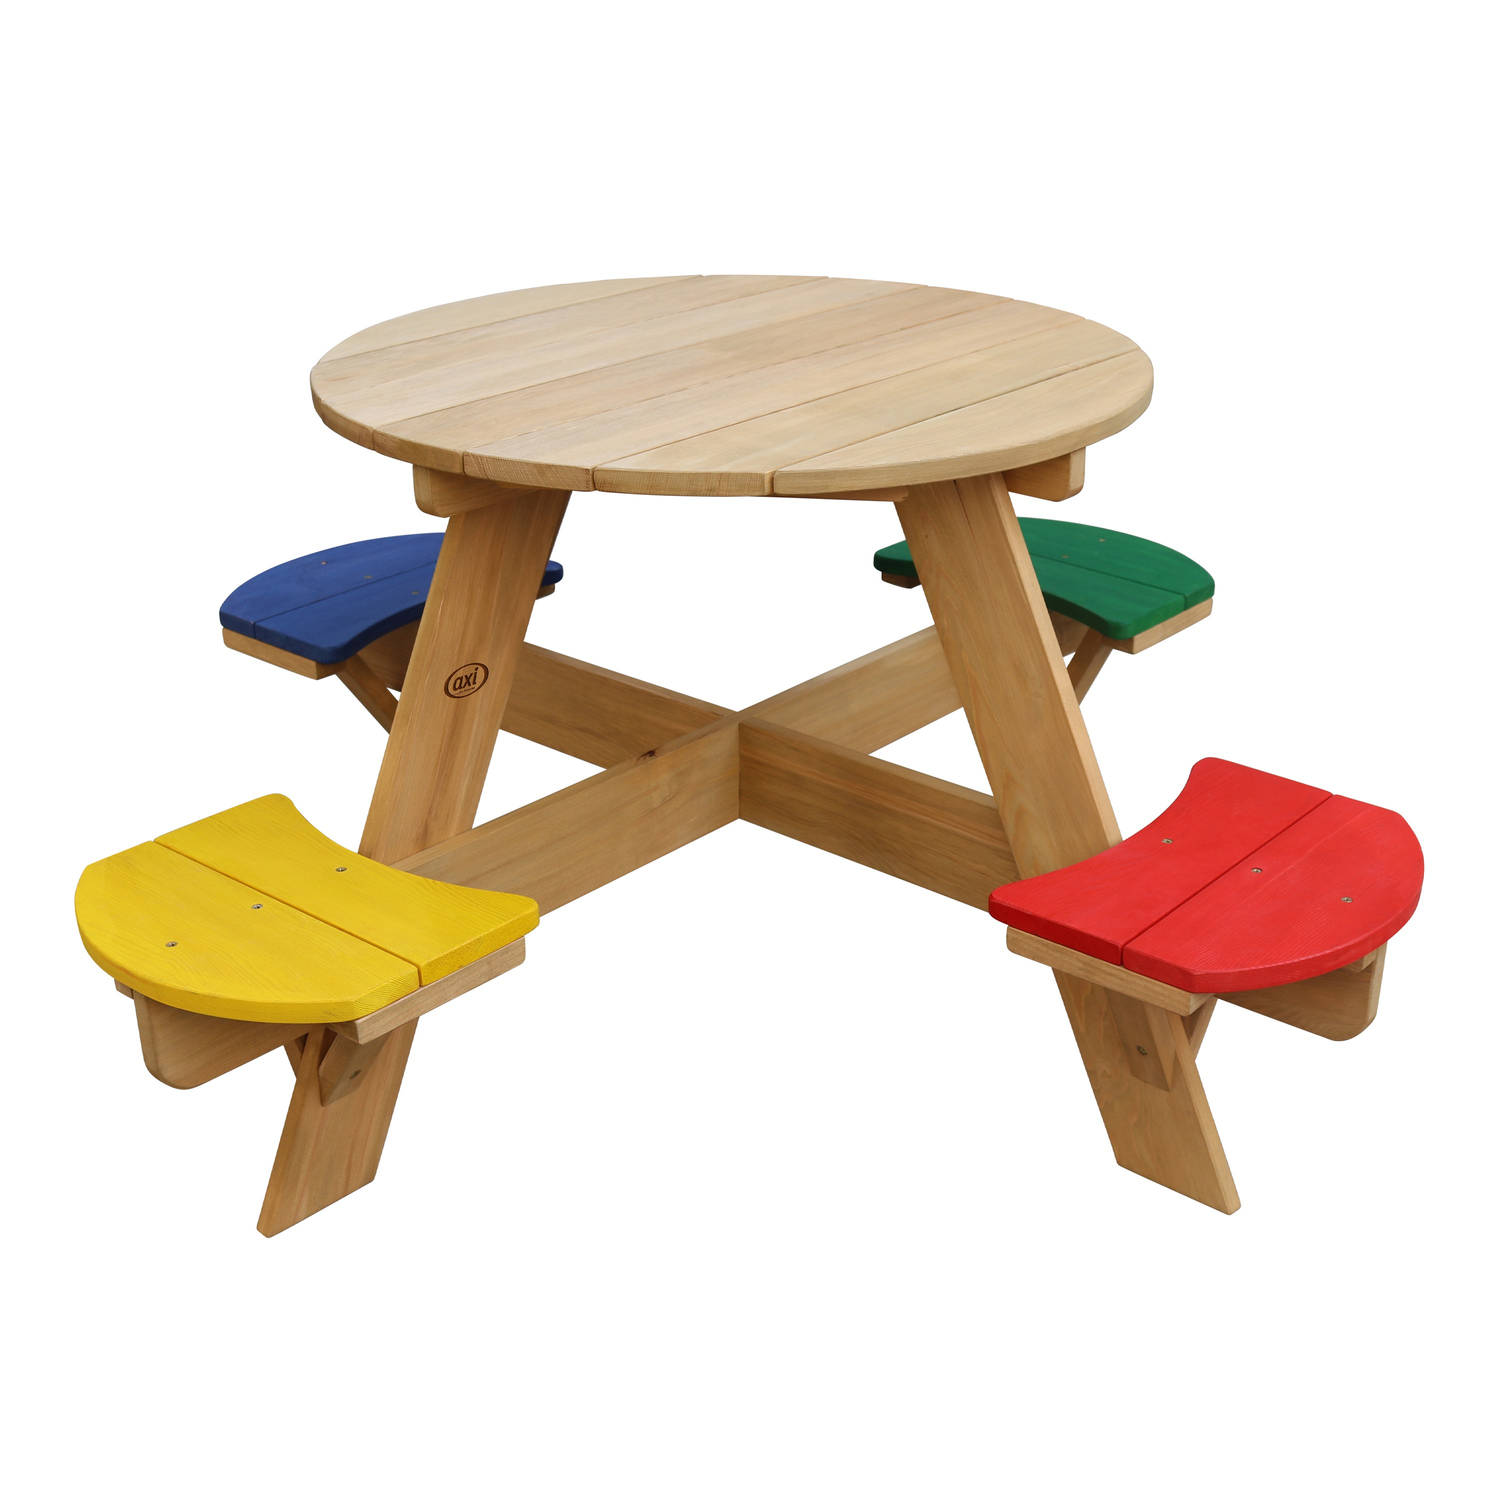 AXI Ufo Picknicktafel rond voor 4 kinderen in regenboog kleuren Picknick tafel van hout